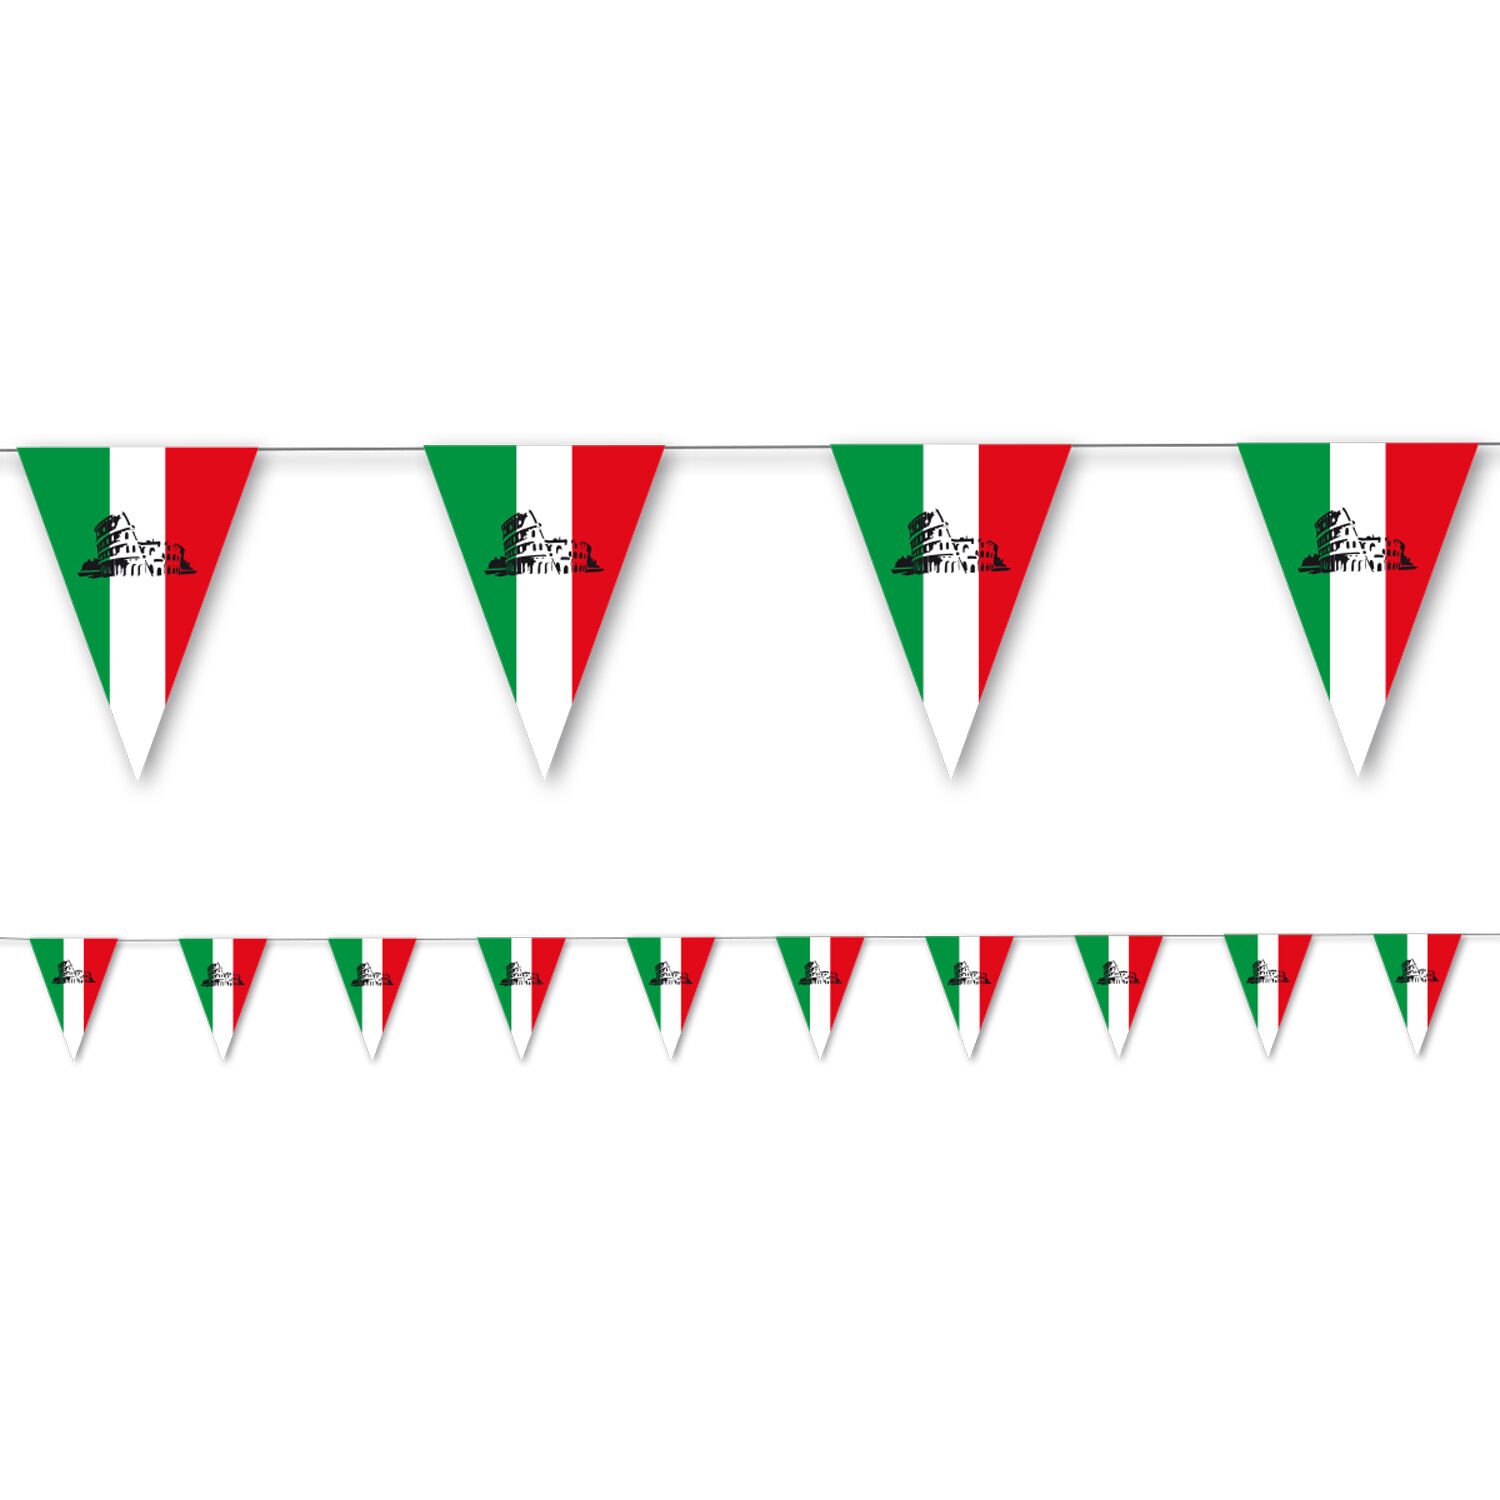 NEU Wimpelkette Italien aus Papier, 3,5m lang, 10 Flaggen, 20x30 cm -  Girlanden & Wimpelketten mit Motiv Girlanden & Wimpelketten Festbedarf  Produkte 